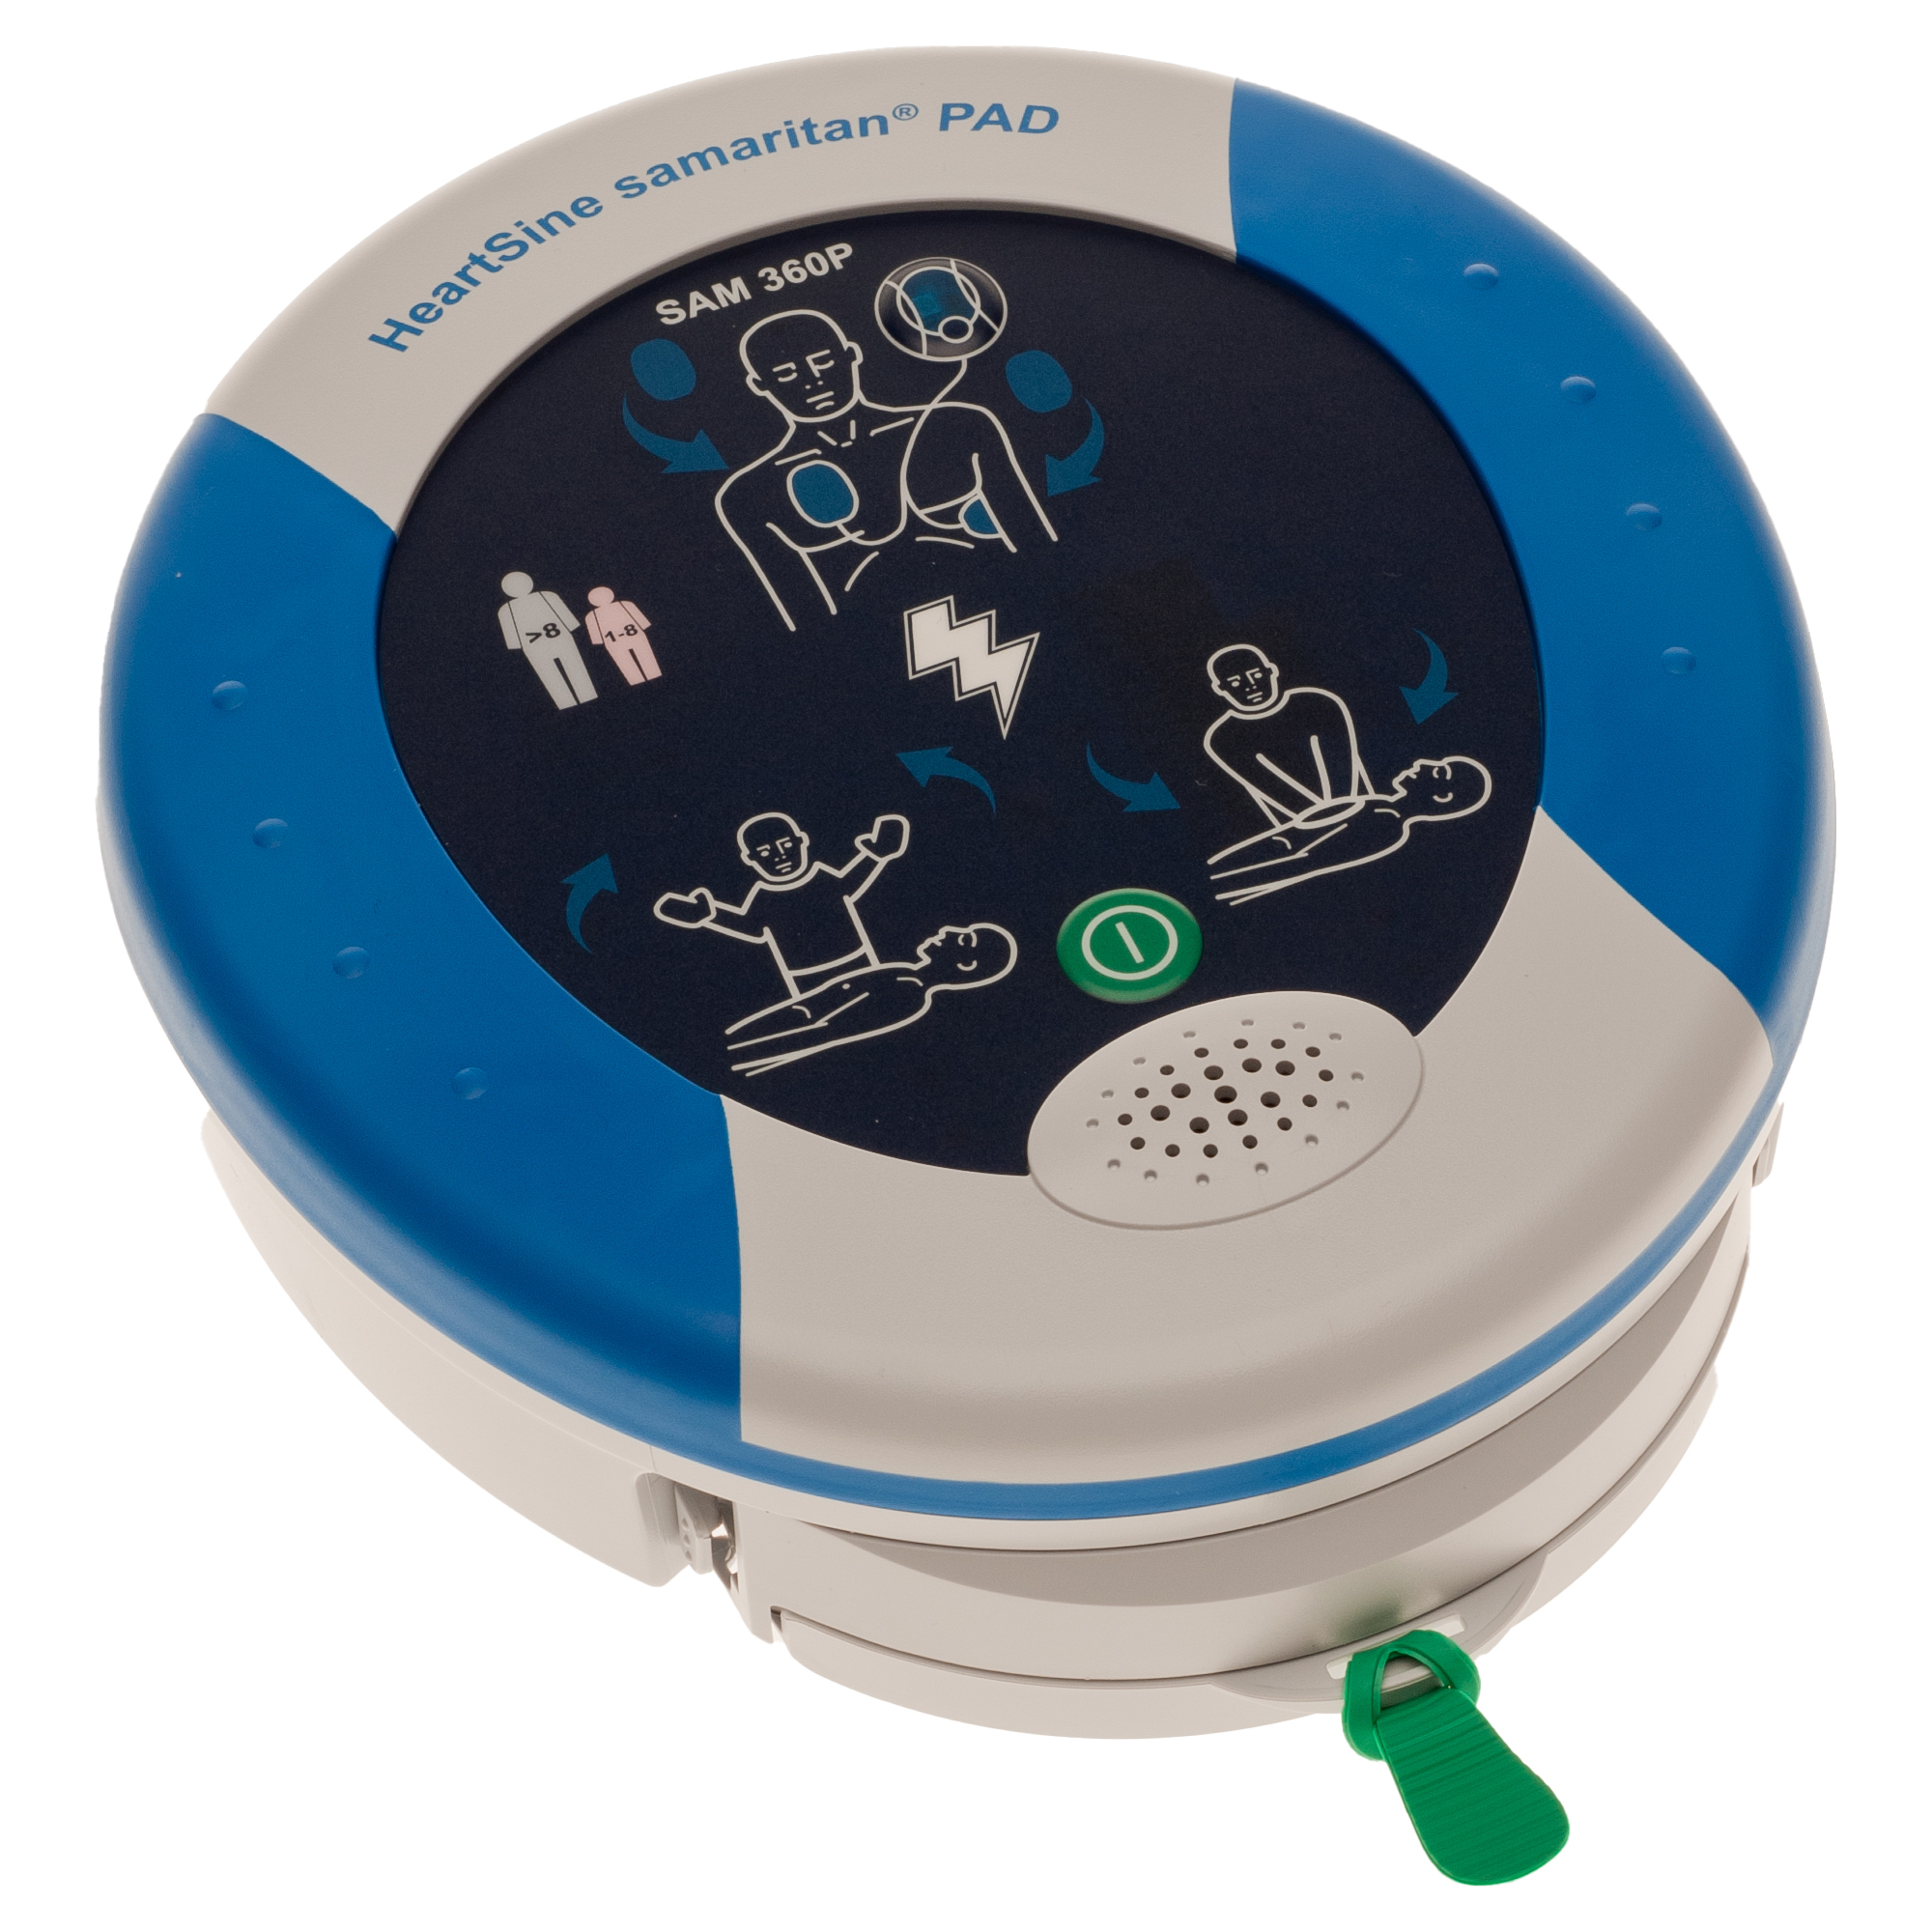 Samaritan PAD 360P AED Defibrillator vollautomatisch. Sowohl gesprochene, als auch visuelle Anweisungen. 8 Jahre Herstellergarantie.